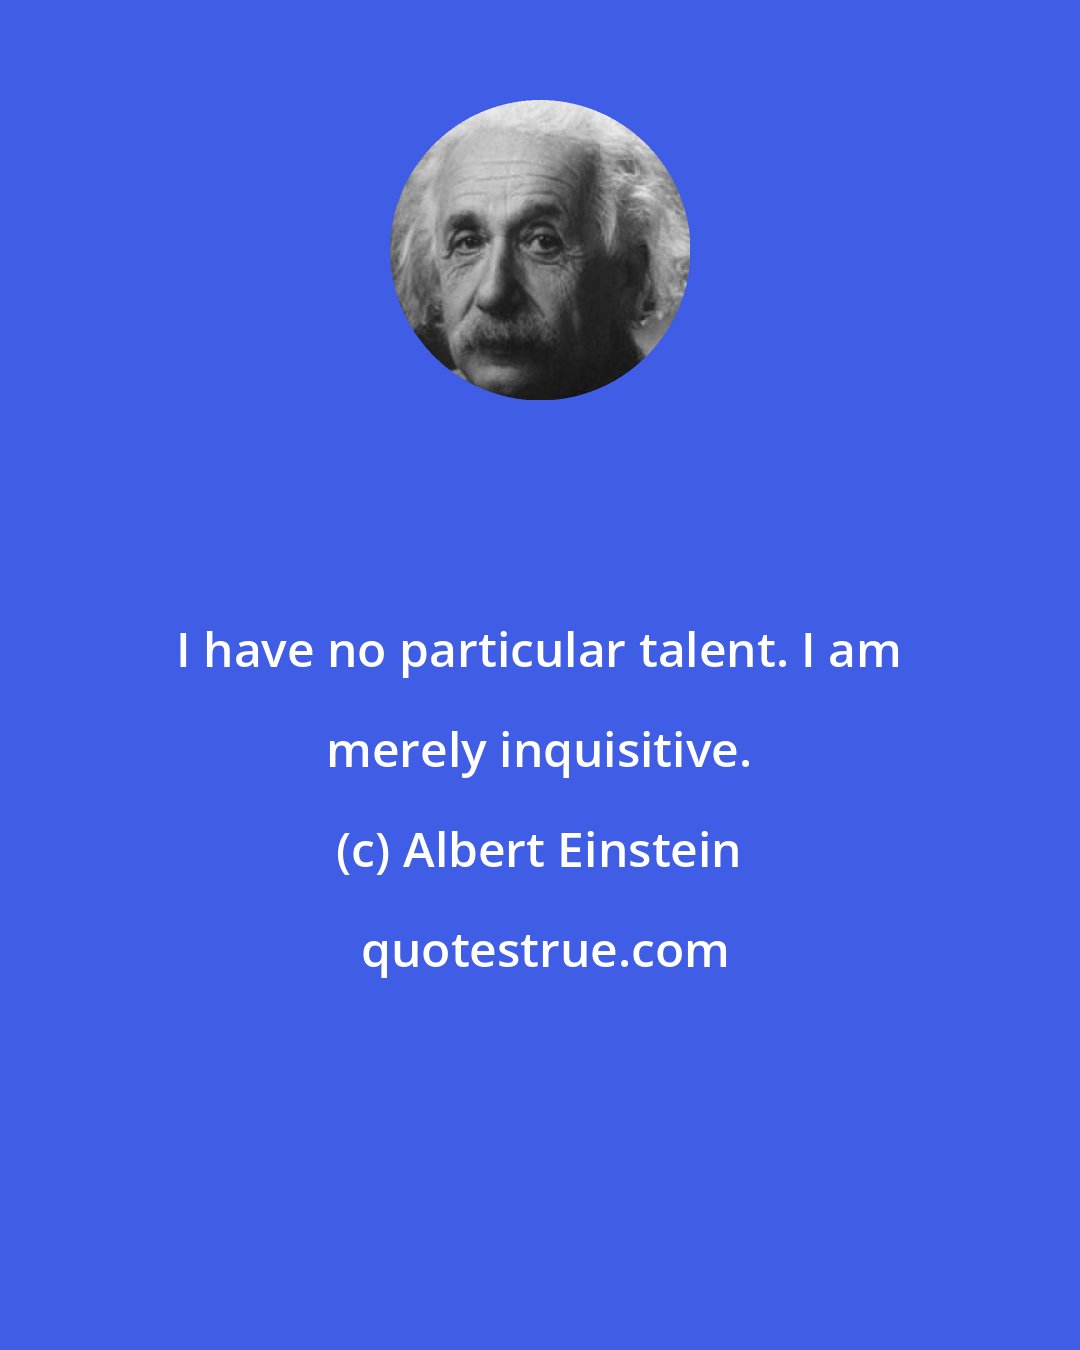 Albert Einstein: I have no particular talent. I am merely inquisitive.